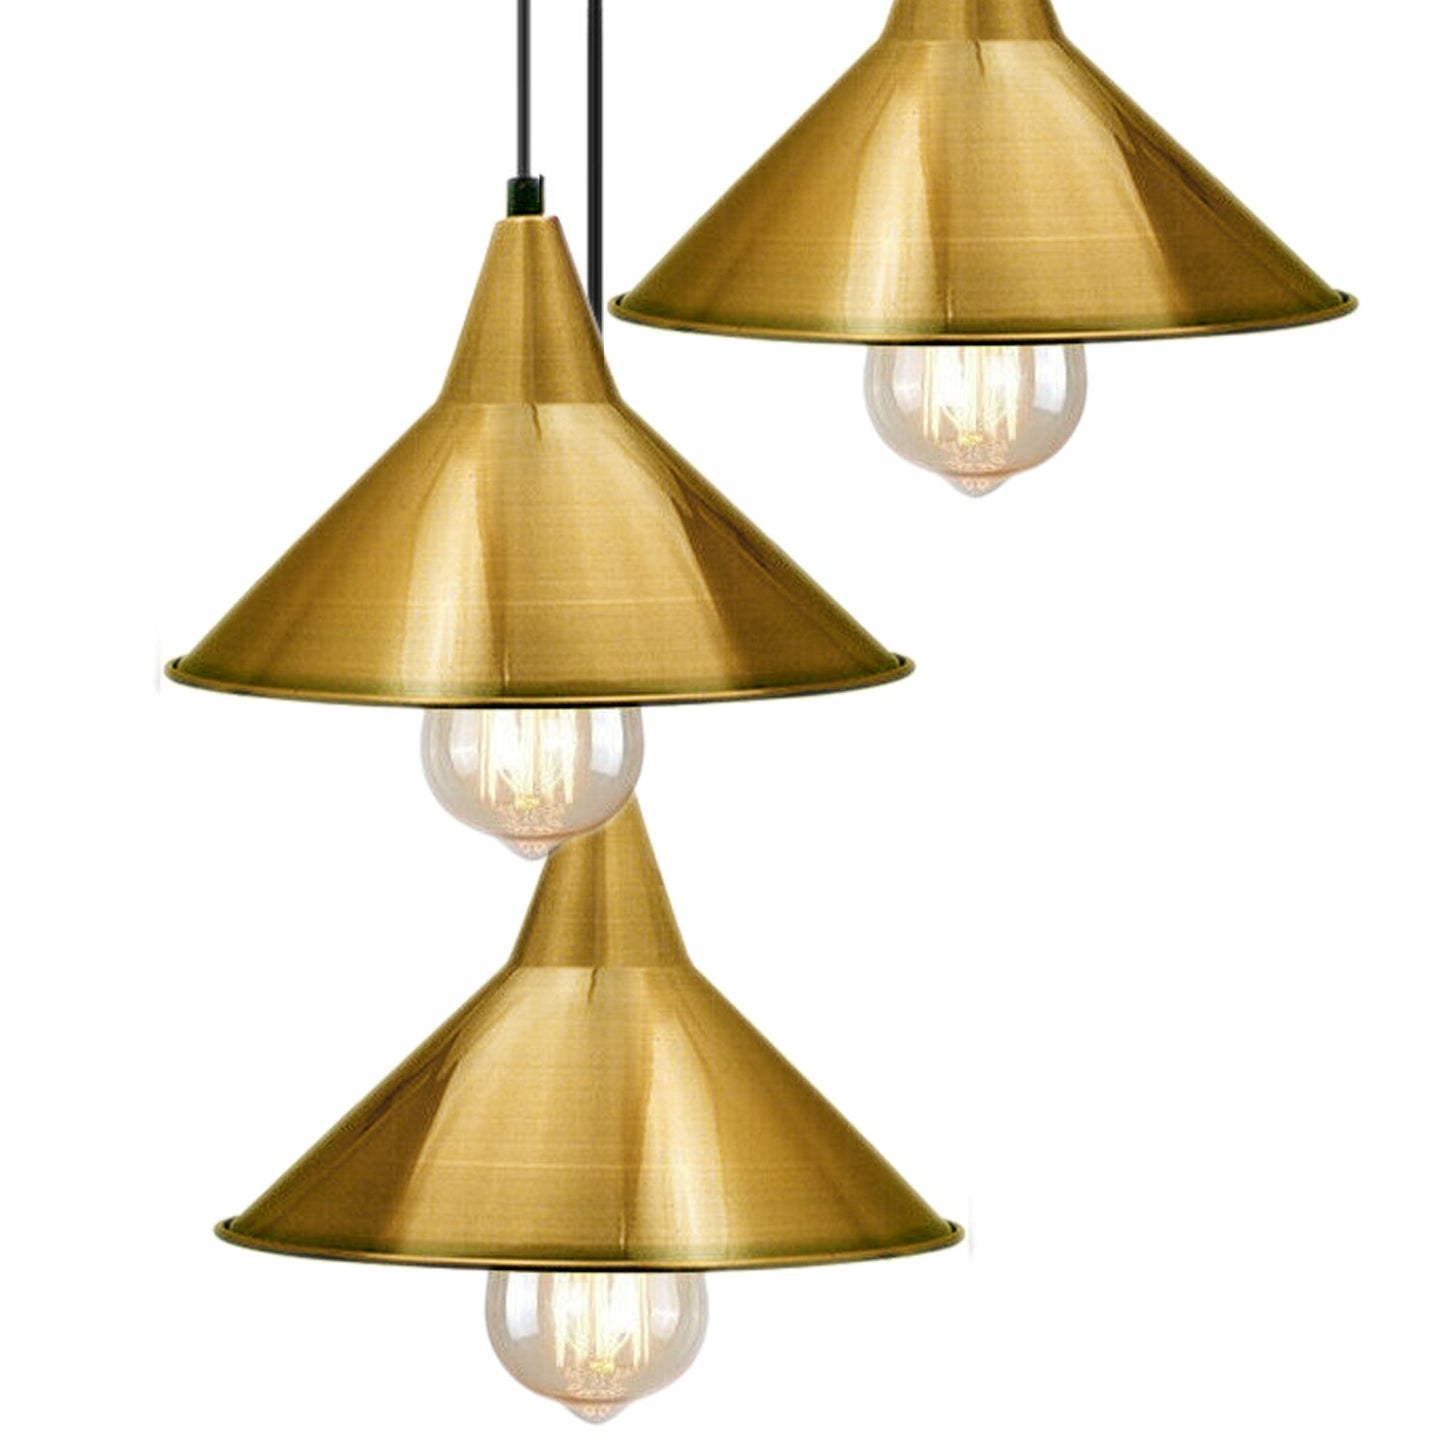 3-Kopf-Industrie-Metalldecken-bunter hängender Farbton-moderne hängende Retro-Licht-Lampe